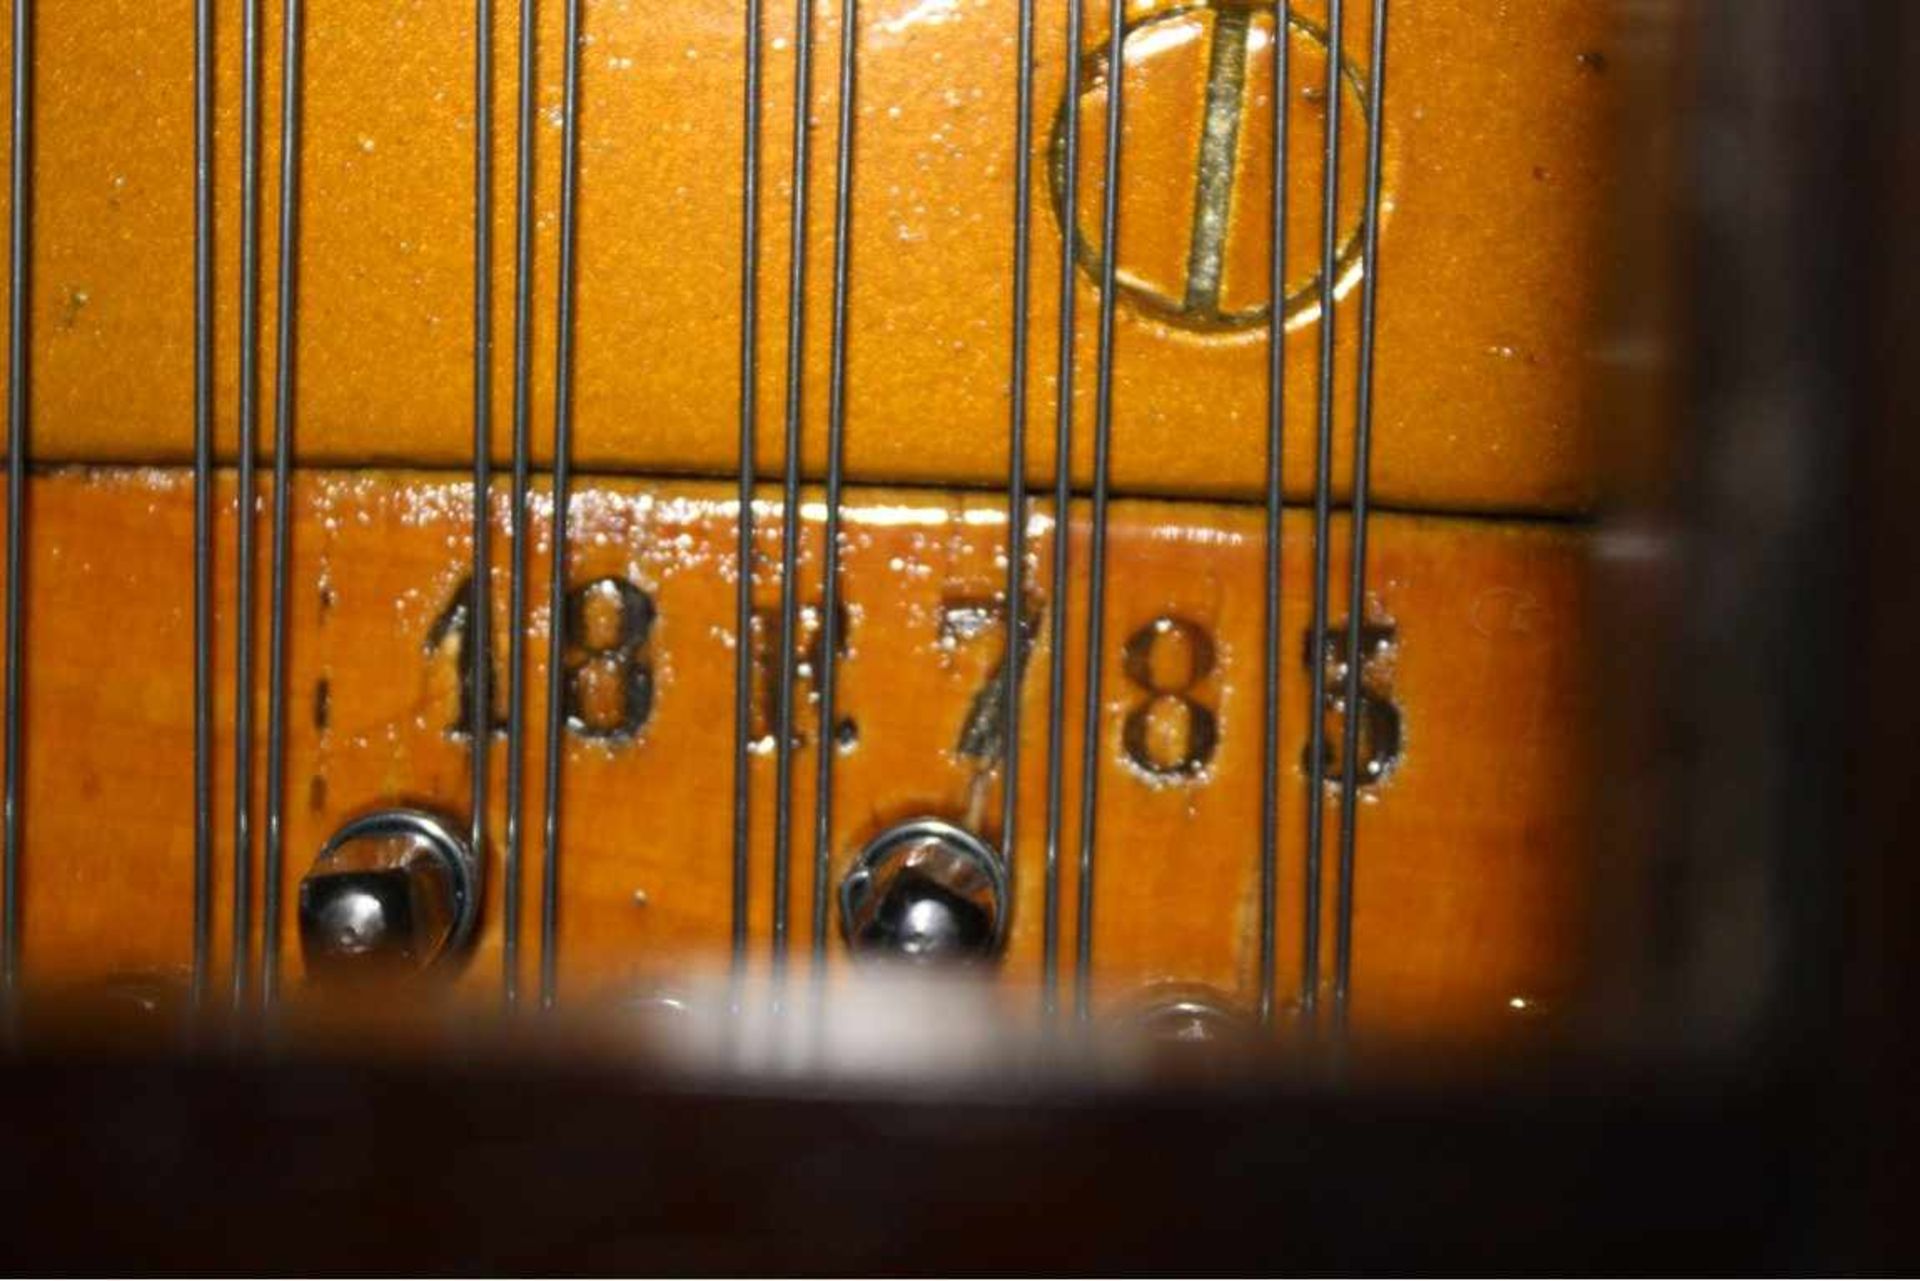 Pleyel Flügel aus dem Jahr 1904 - Lieblingsmarke von Chopinmit der Seriennummer 132202. Der - Bild 6 aus 7